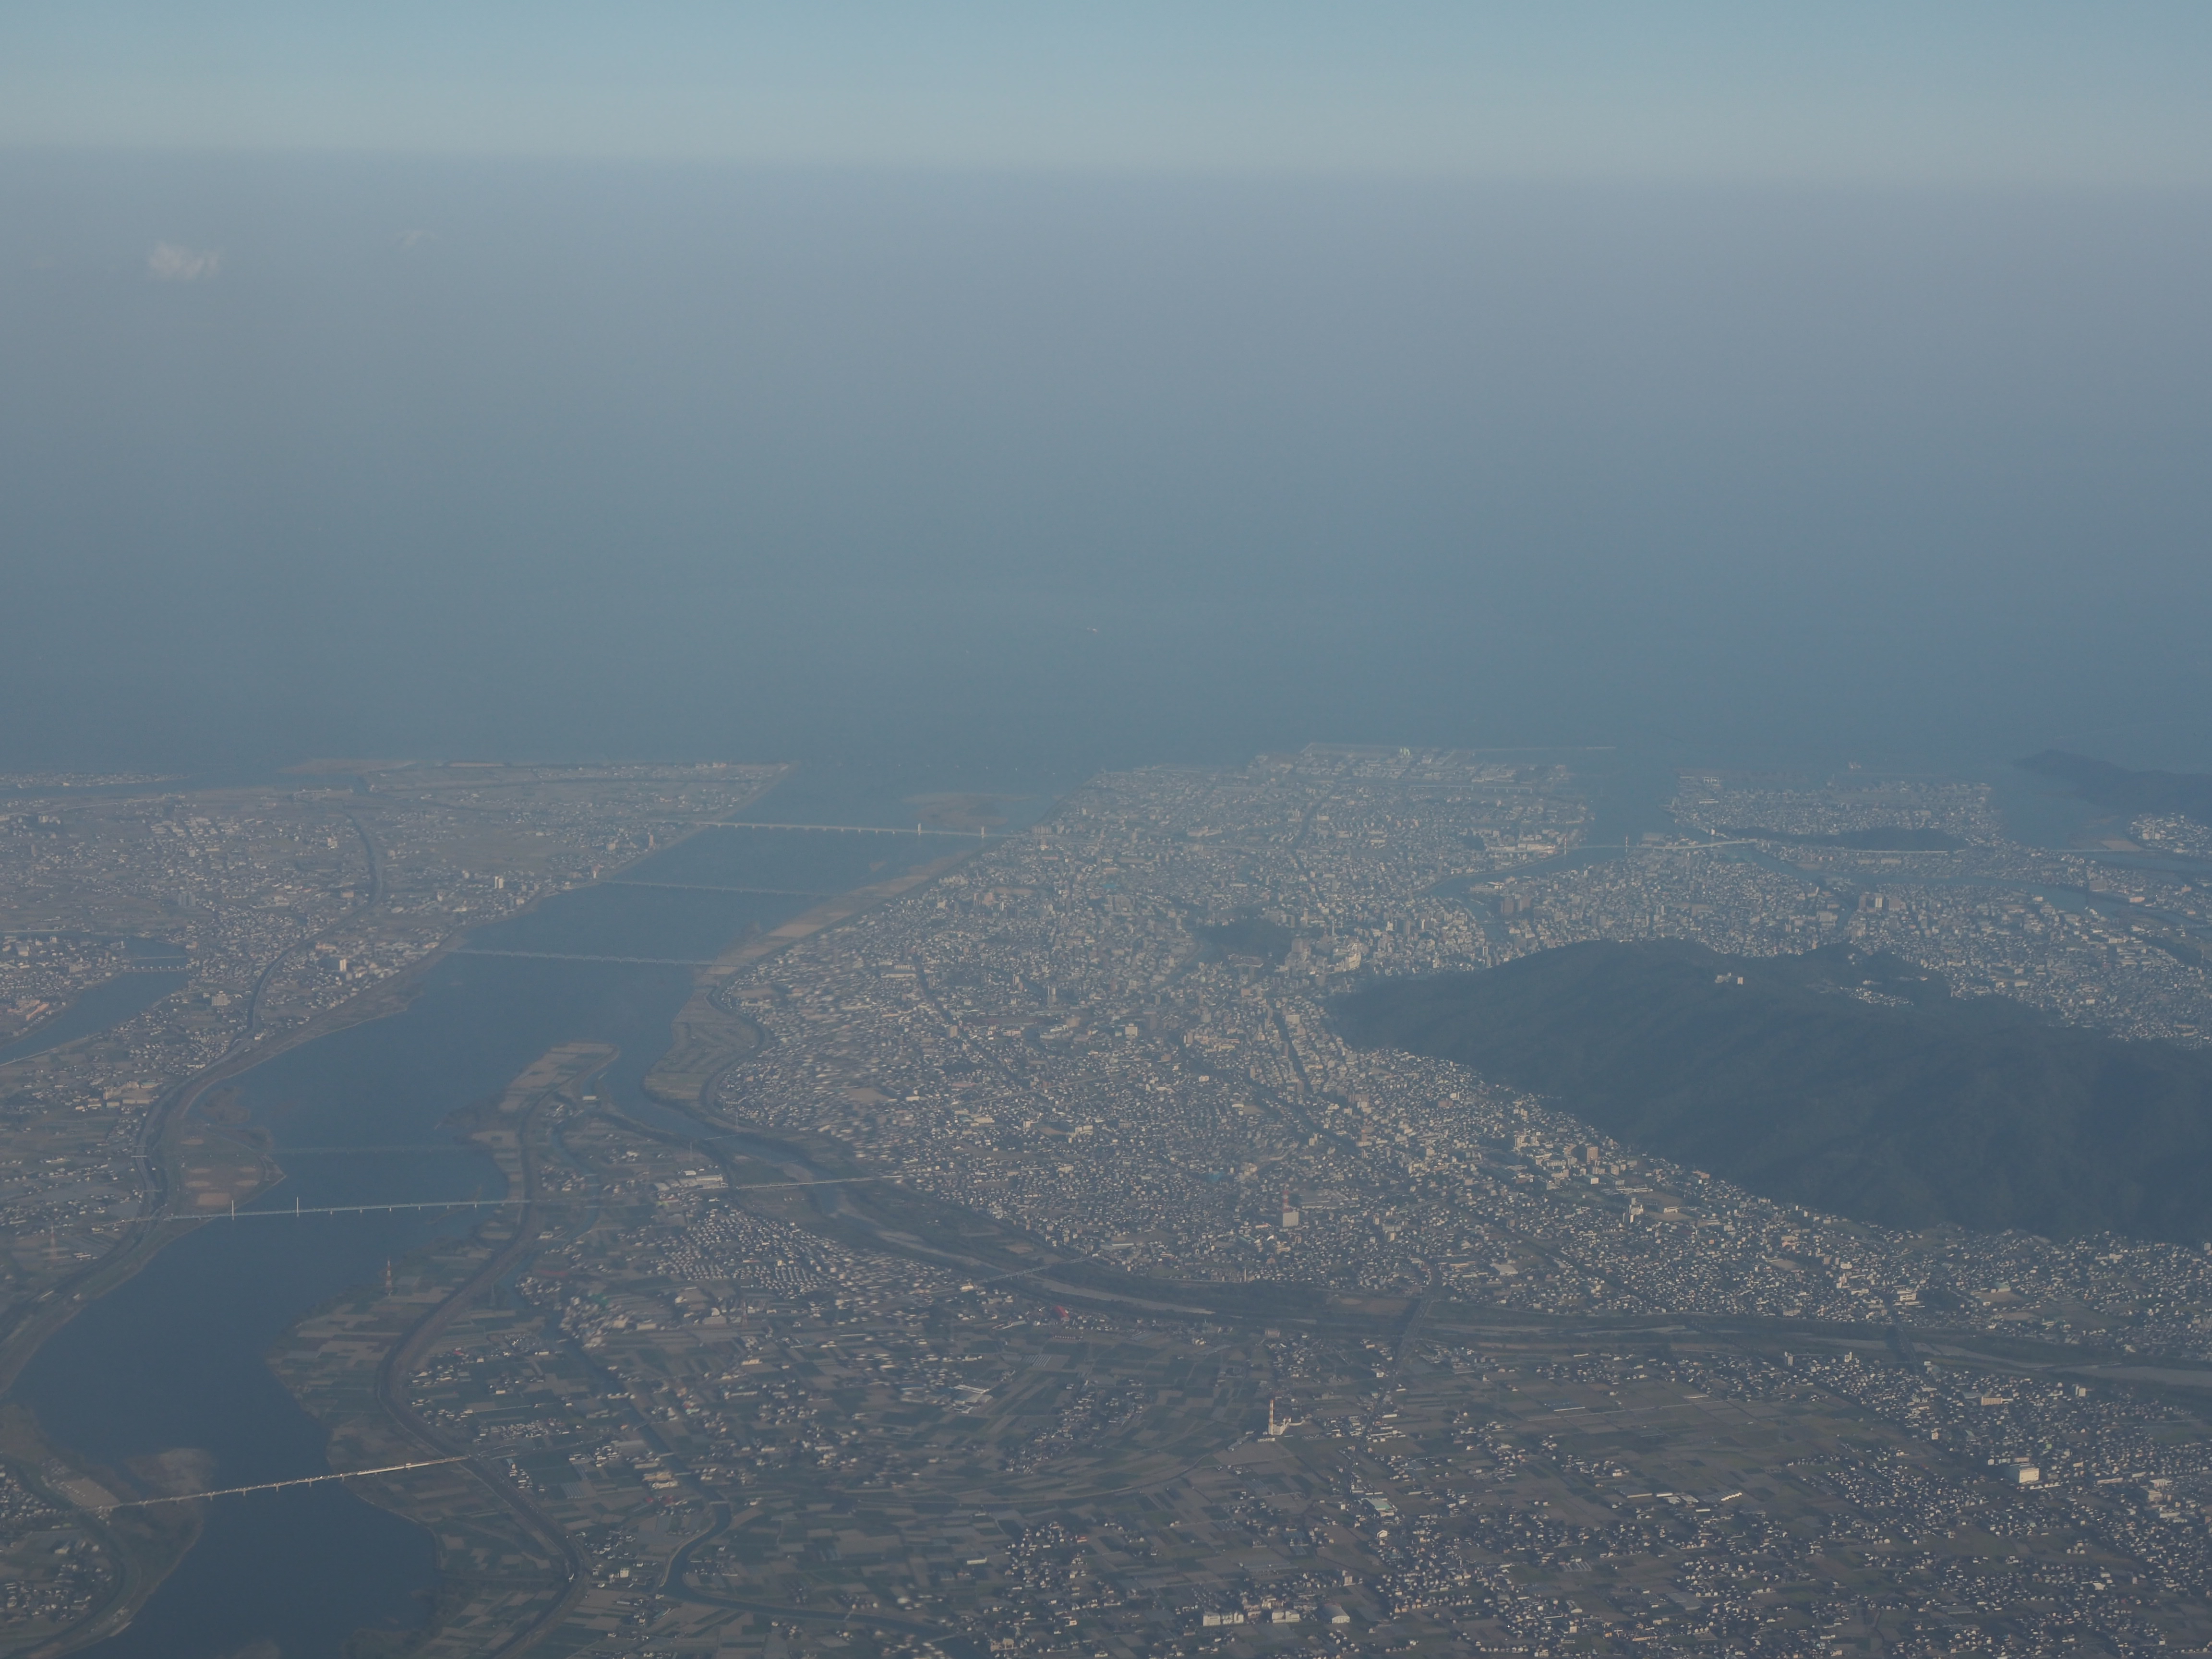 从客机舷窗处俯瞰到的大阪市区（因为舷窗玻璃刮痕较多且存在大块的模糊区域，所以拍出来的照片会给人一种雾蒙蒙的感觉，其实大阪的天空非常干净）